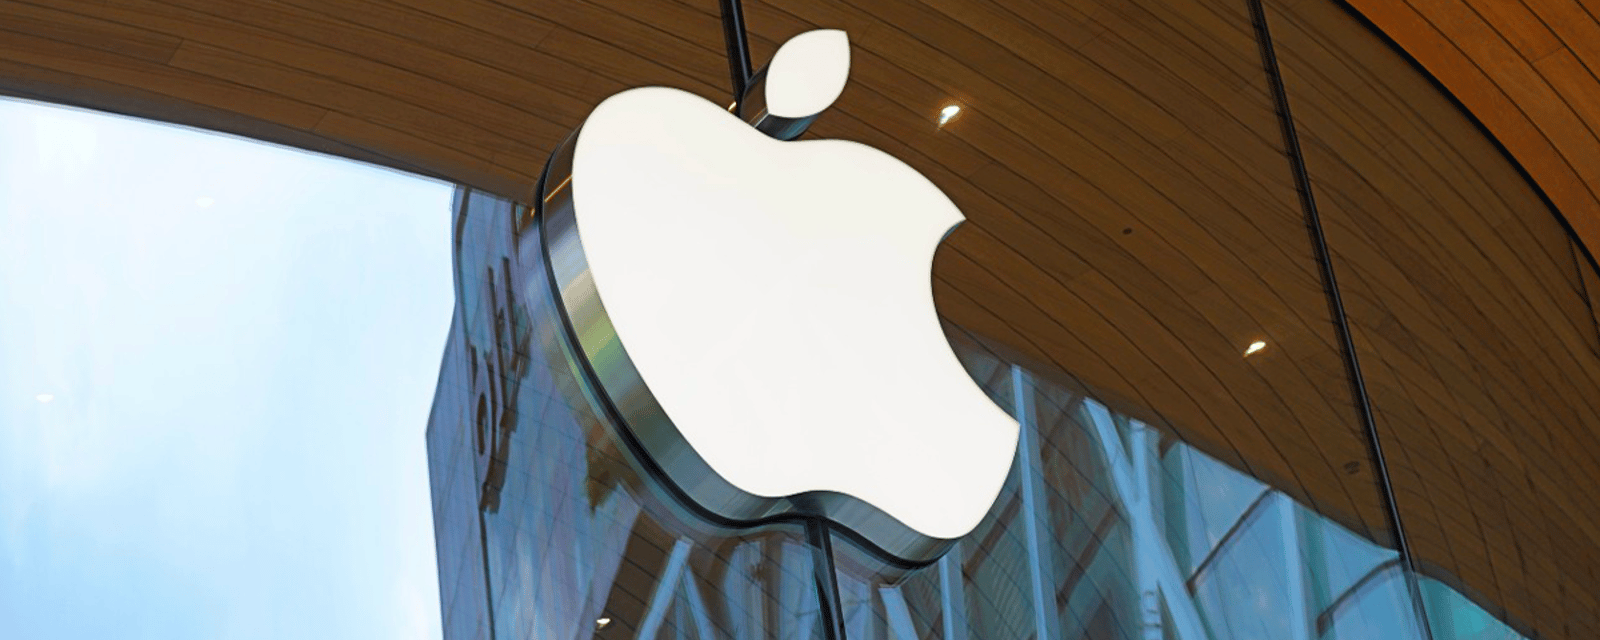 Une action collective contre Apple pourrait mettre jusqu'à 545 $ dans les poches des Québécois